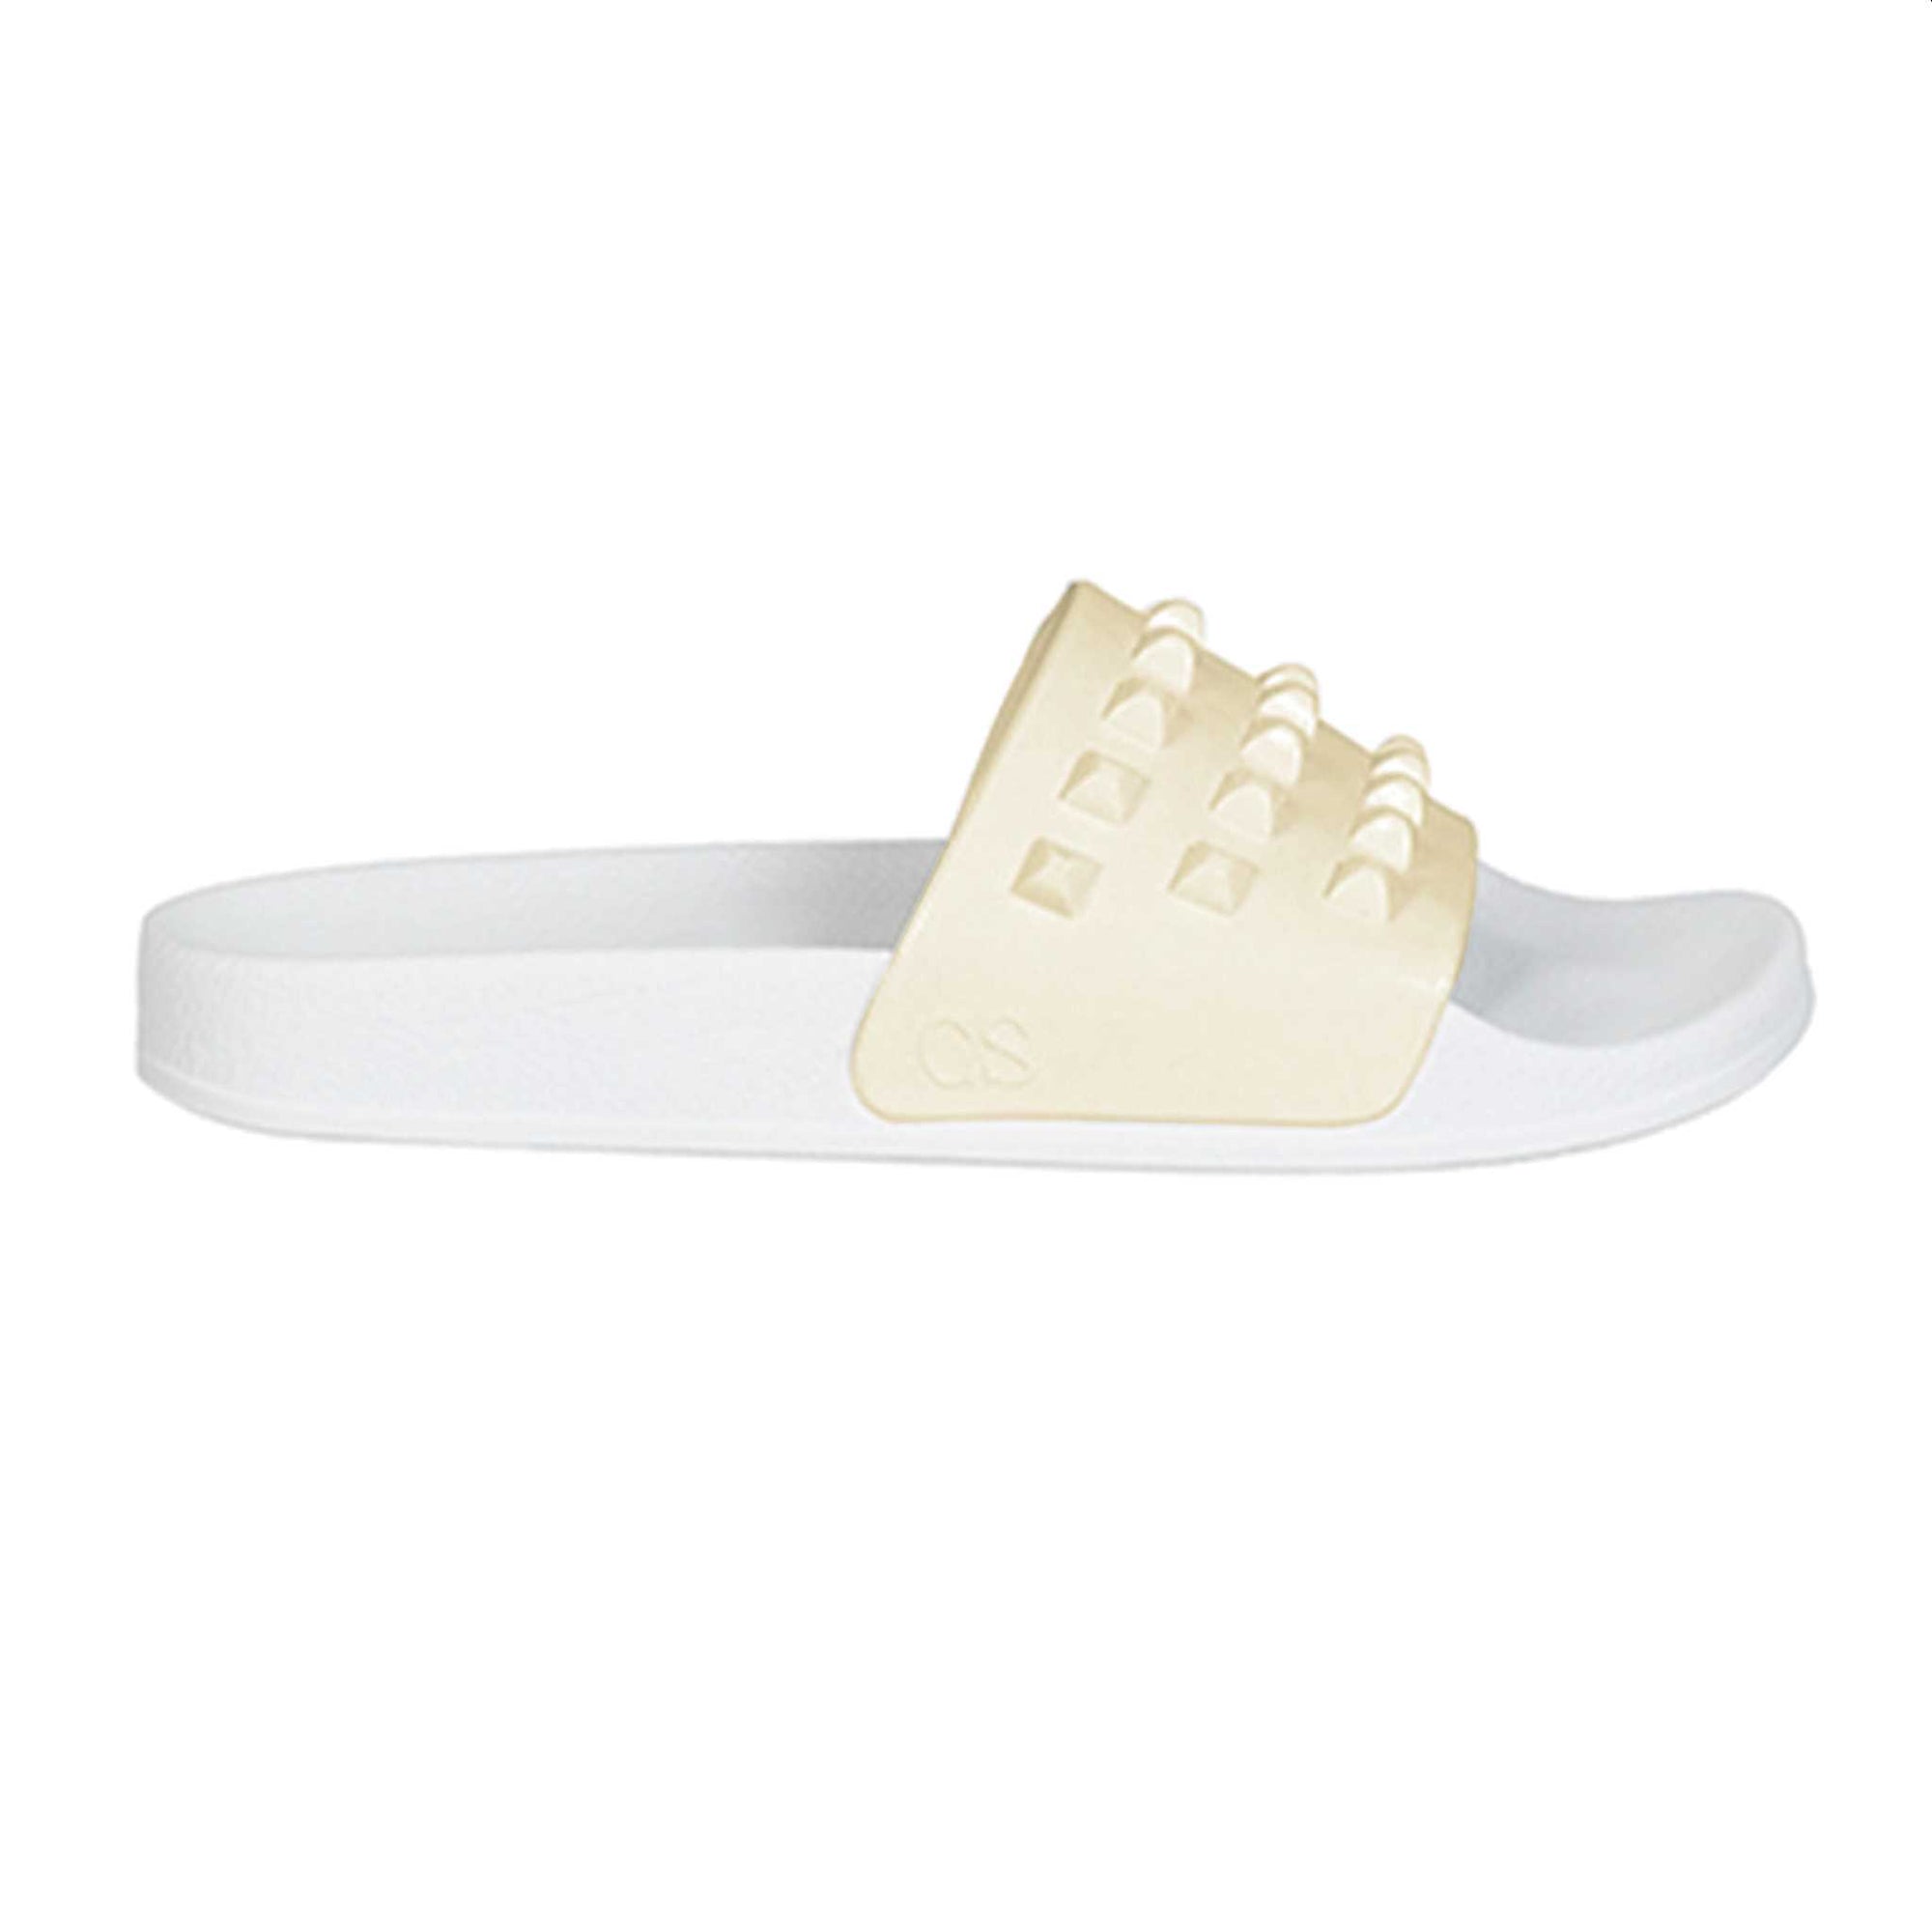 Franco white sandals, platform slides for women from carmen sol